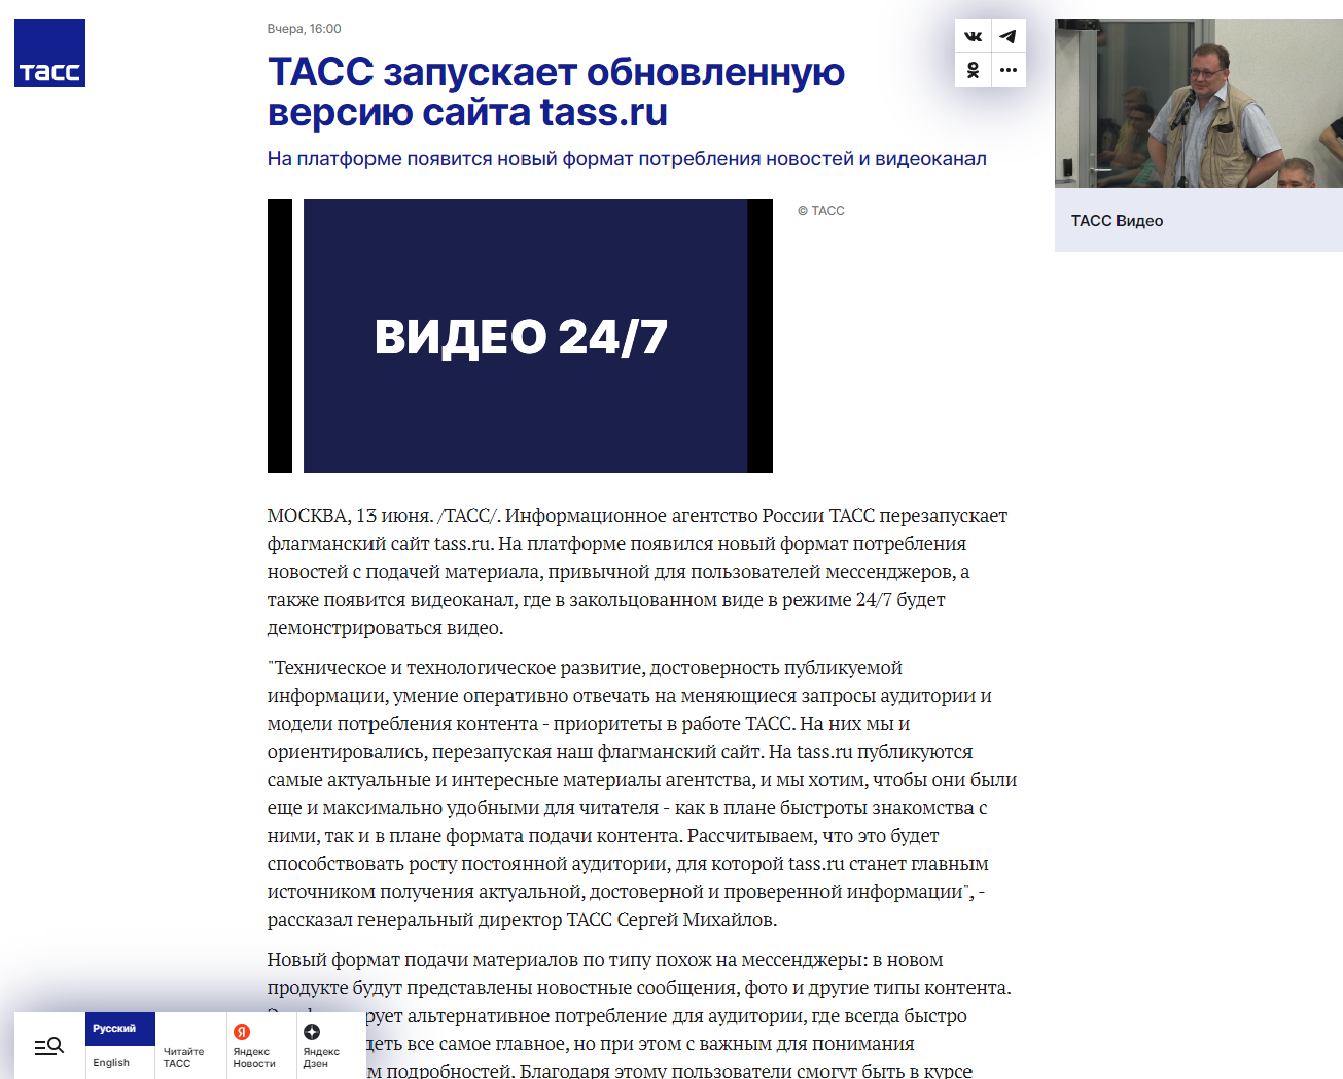 ТАСС объявил о перезапуске сайта tass.ru